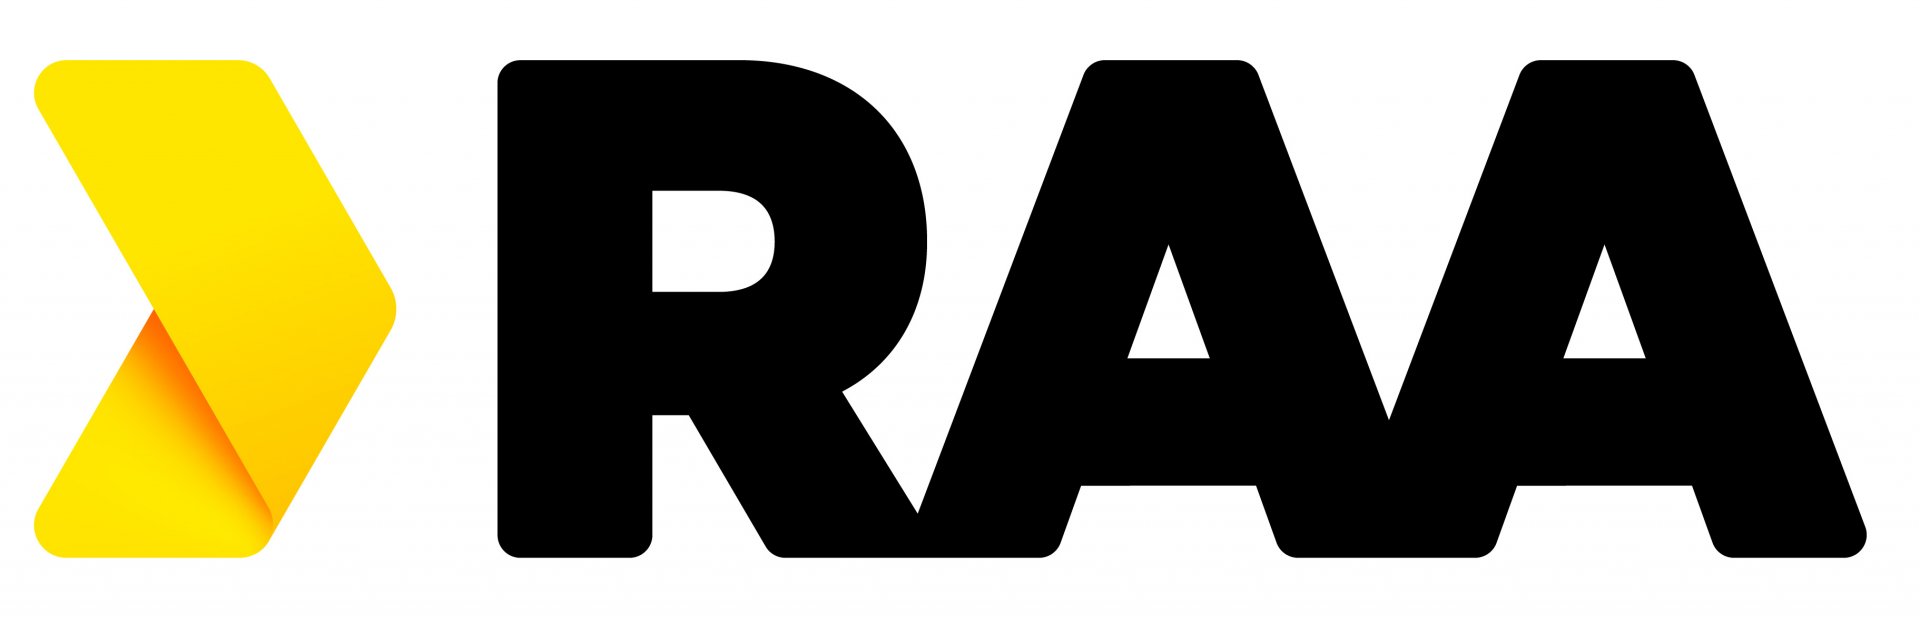 Raa Primary Logo   Positive